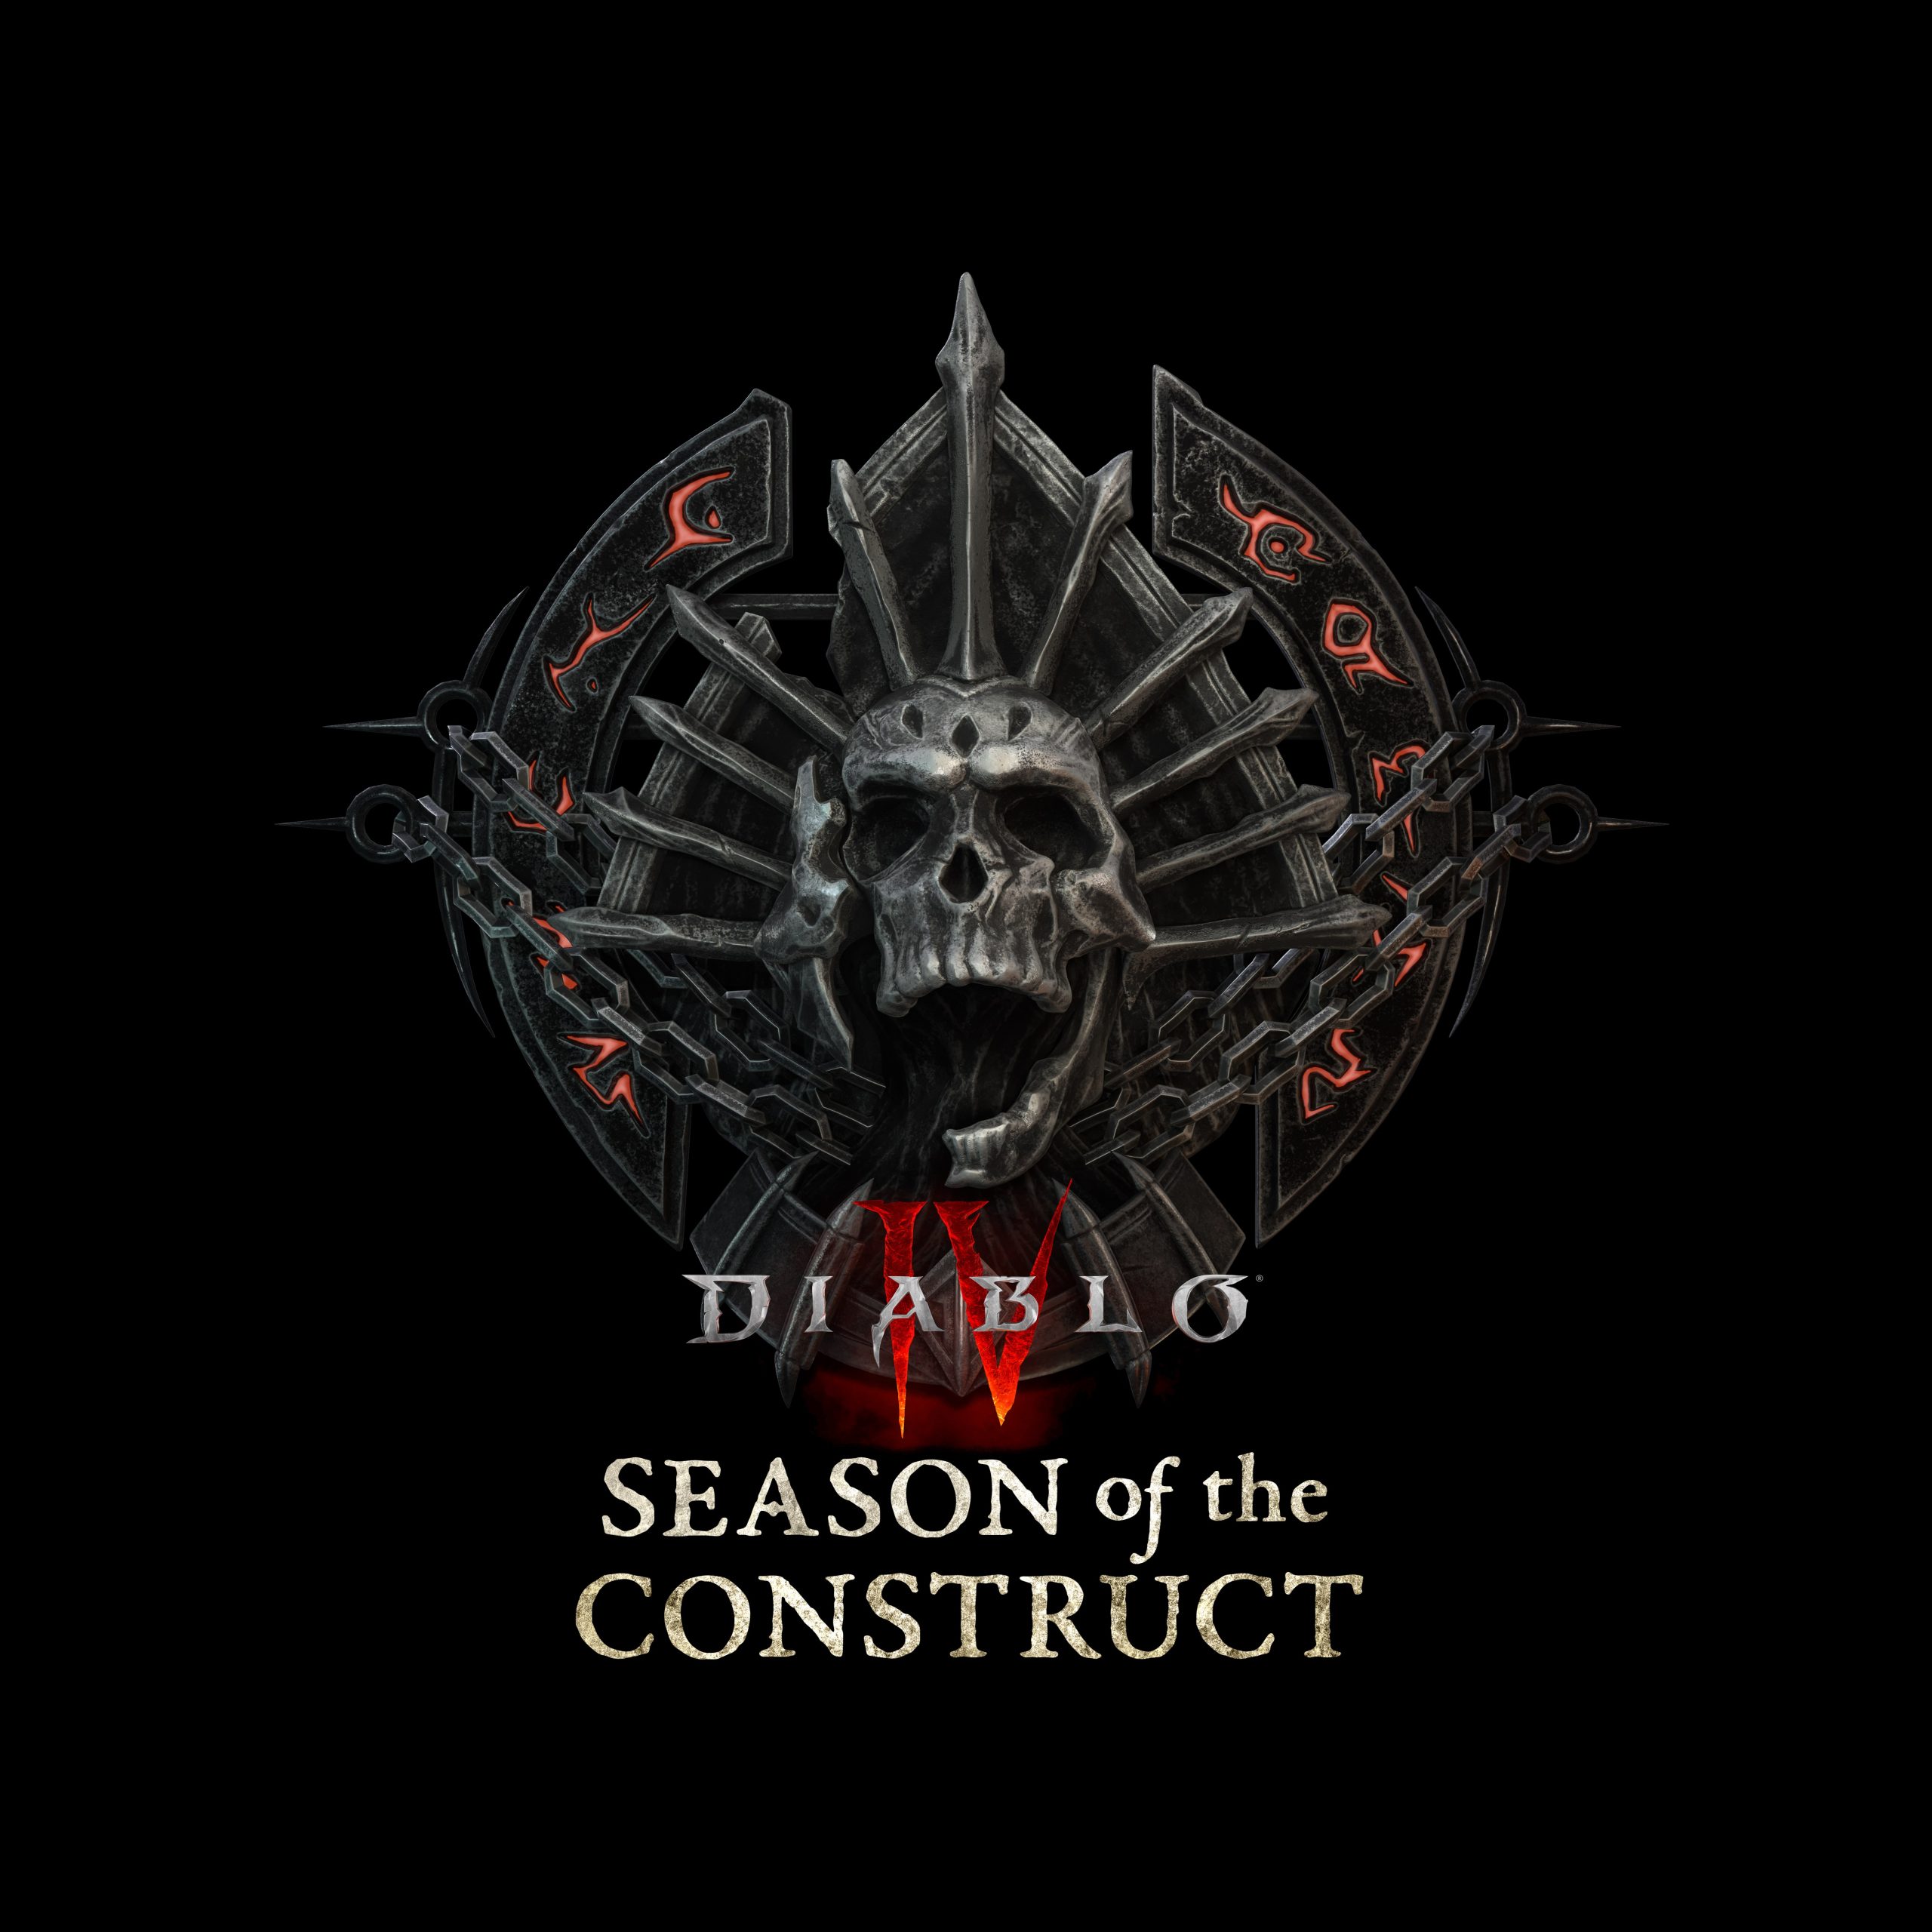 Diablo IV Season 3 announced as “The Season of the Construct”